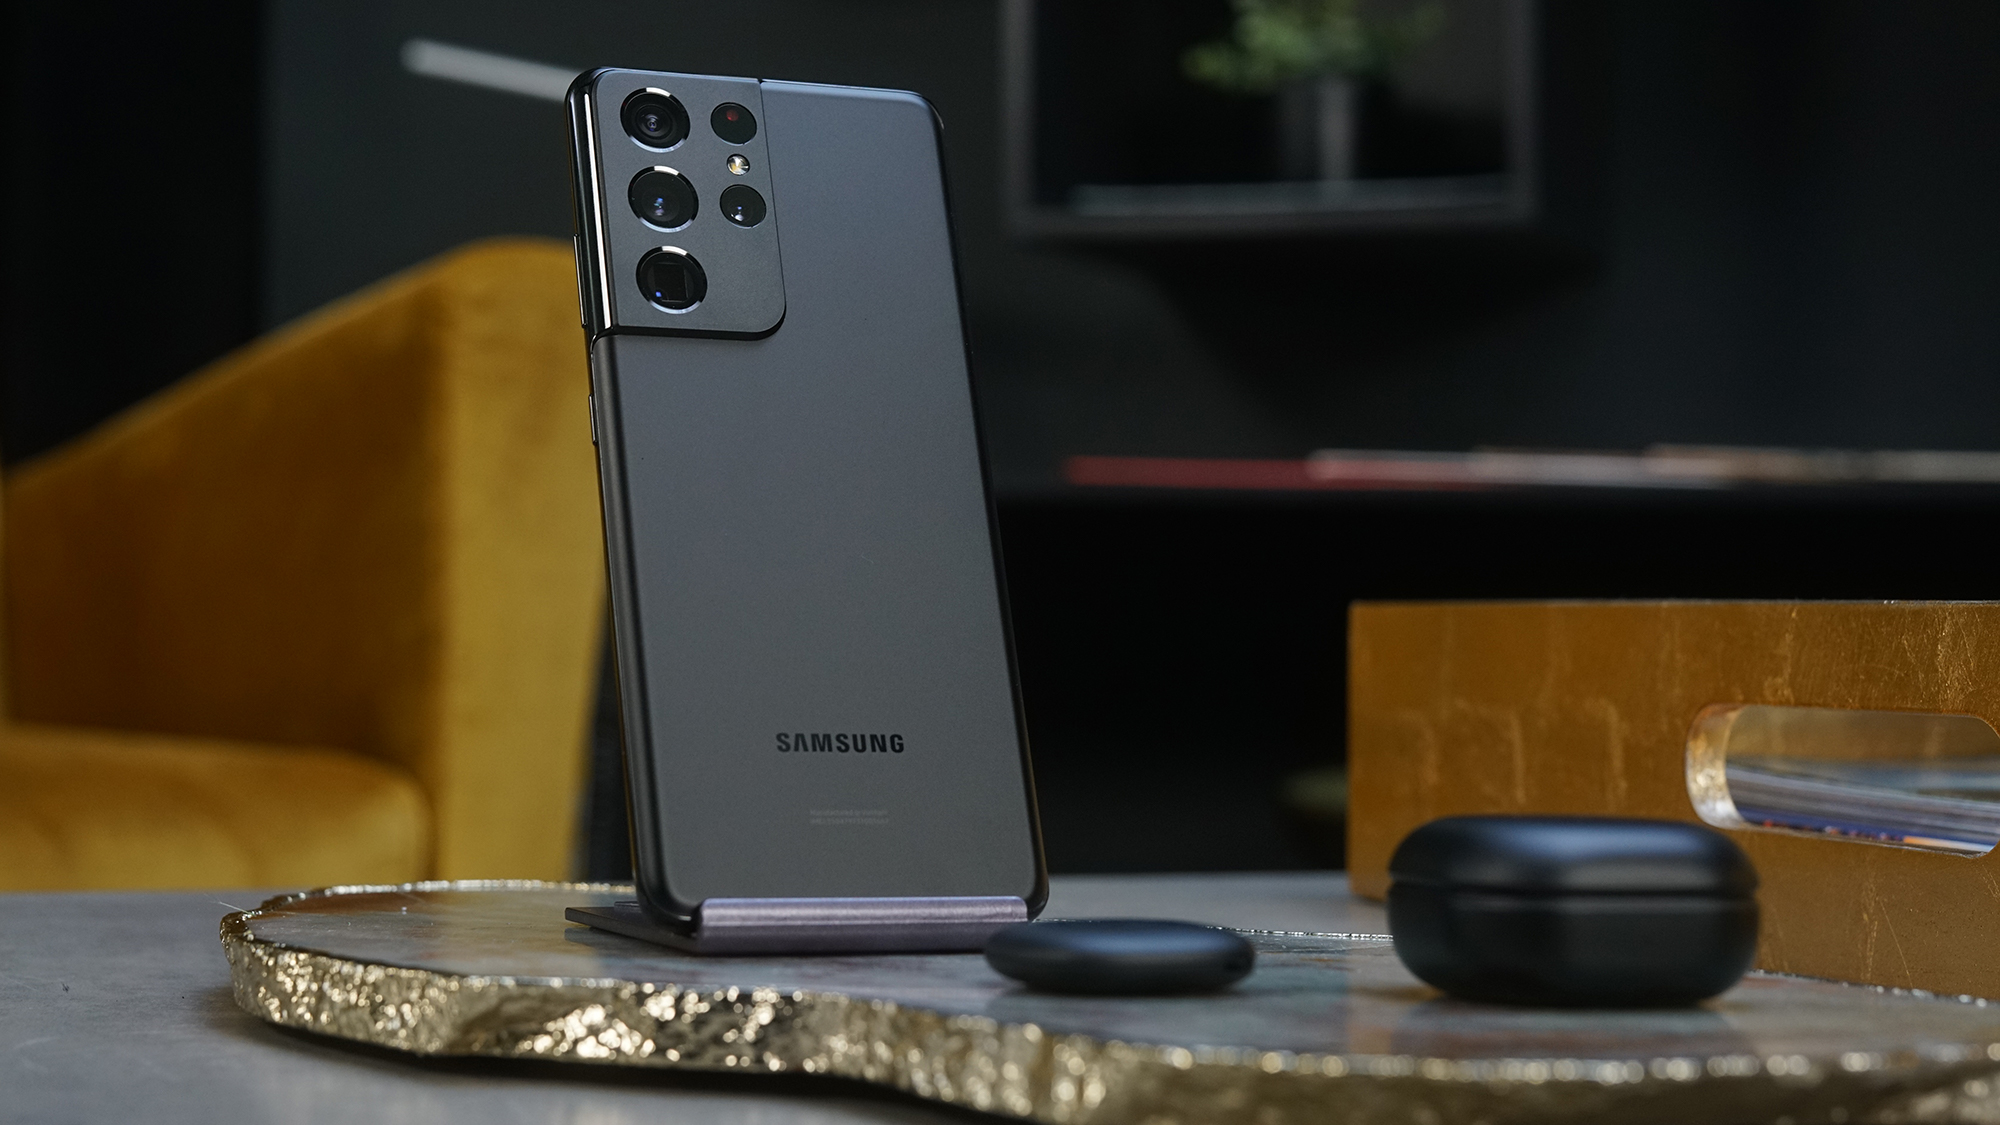 Cụm camera chất lượng của Galaxy S21 Ultra 5G